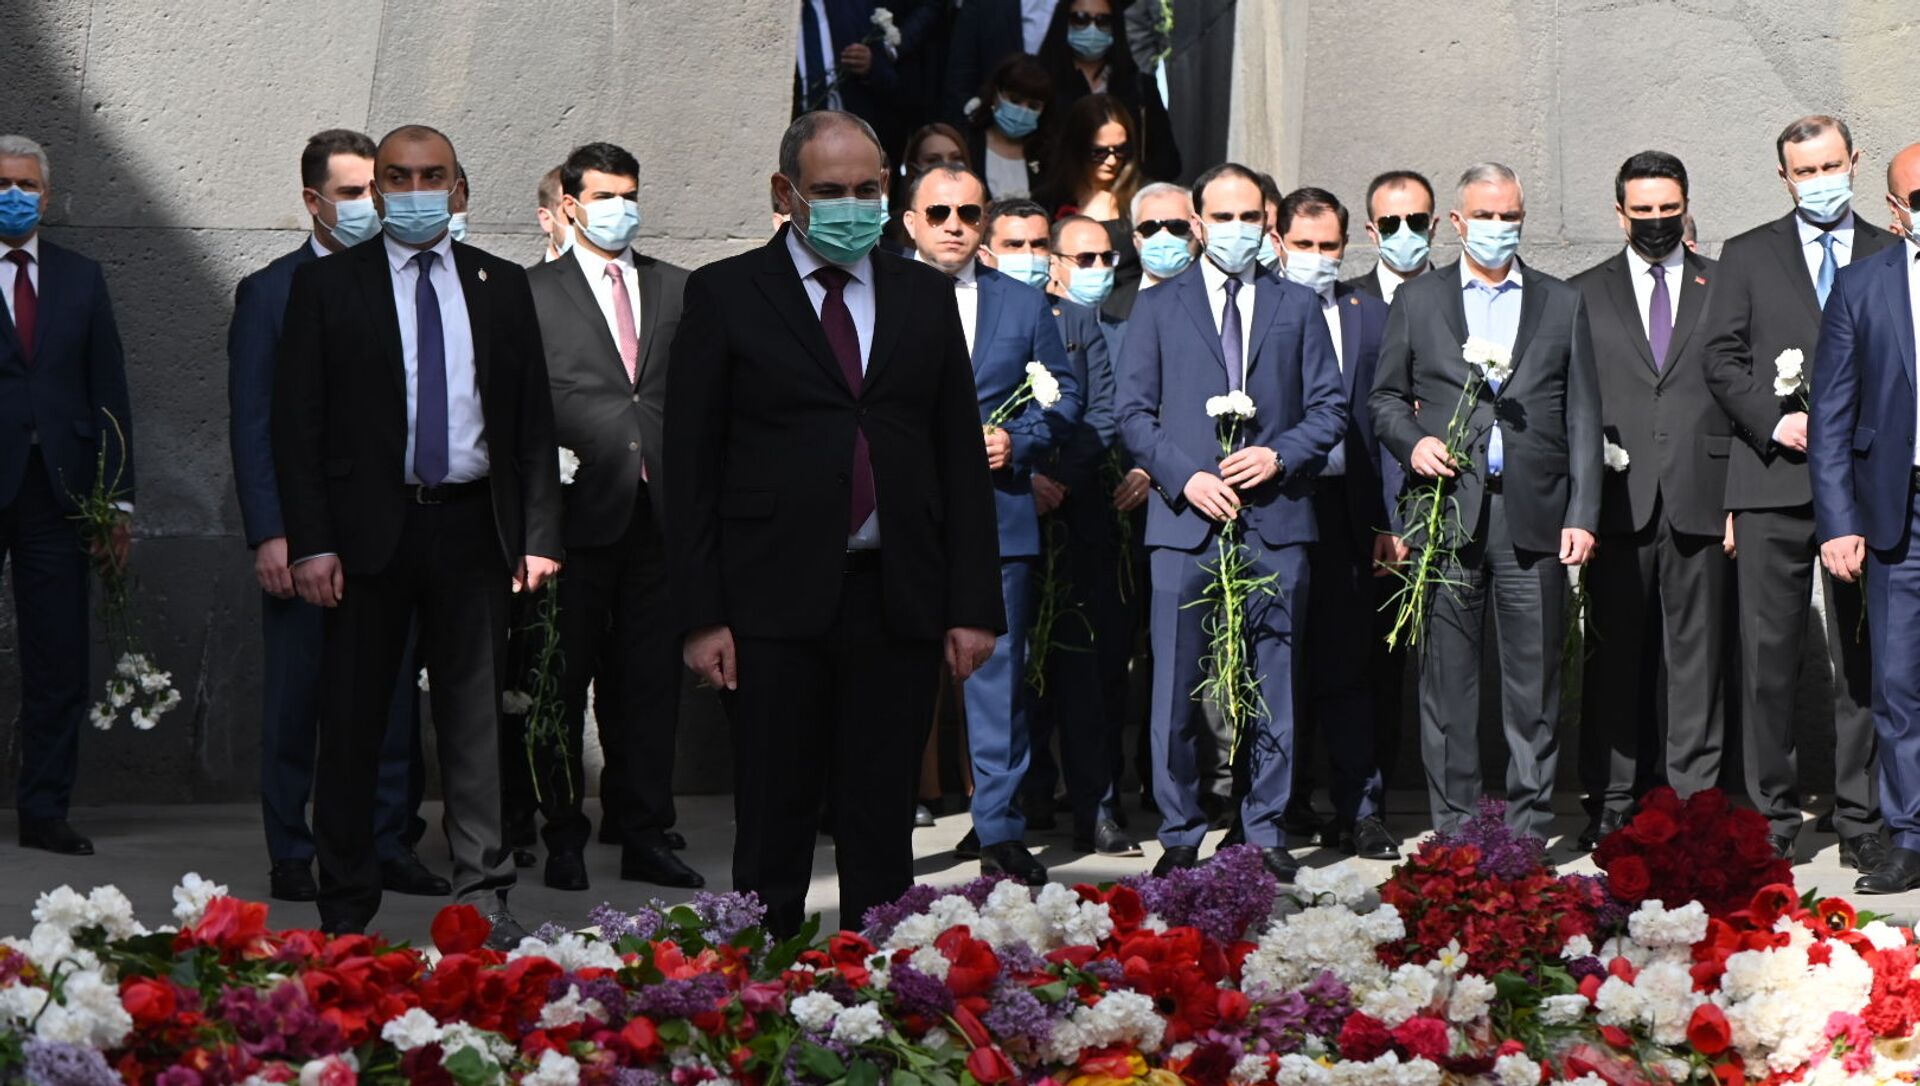 Никол Пашинян посетил мемориальный комплекс Цицернакаберд (24 апреля 2021). Ереван - Sputnik Արմենիա, 1920, 24.04.2021